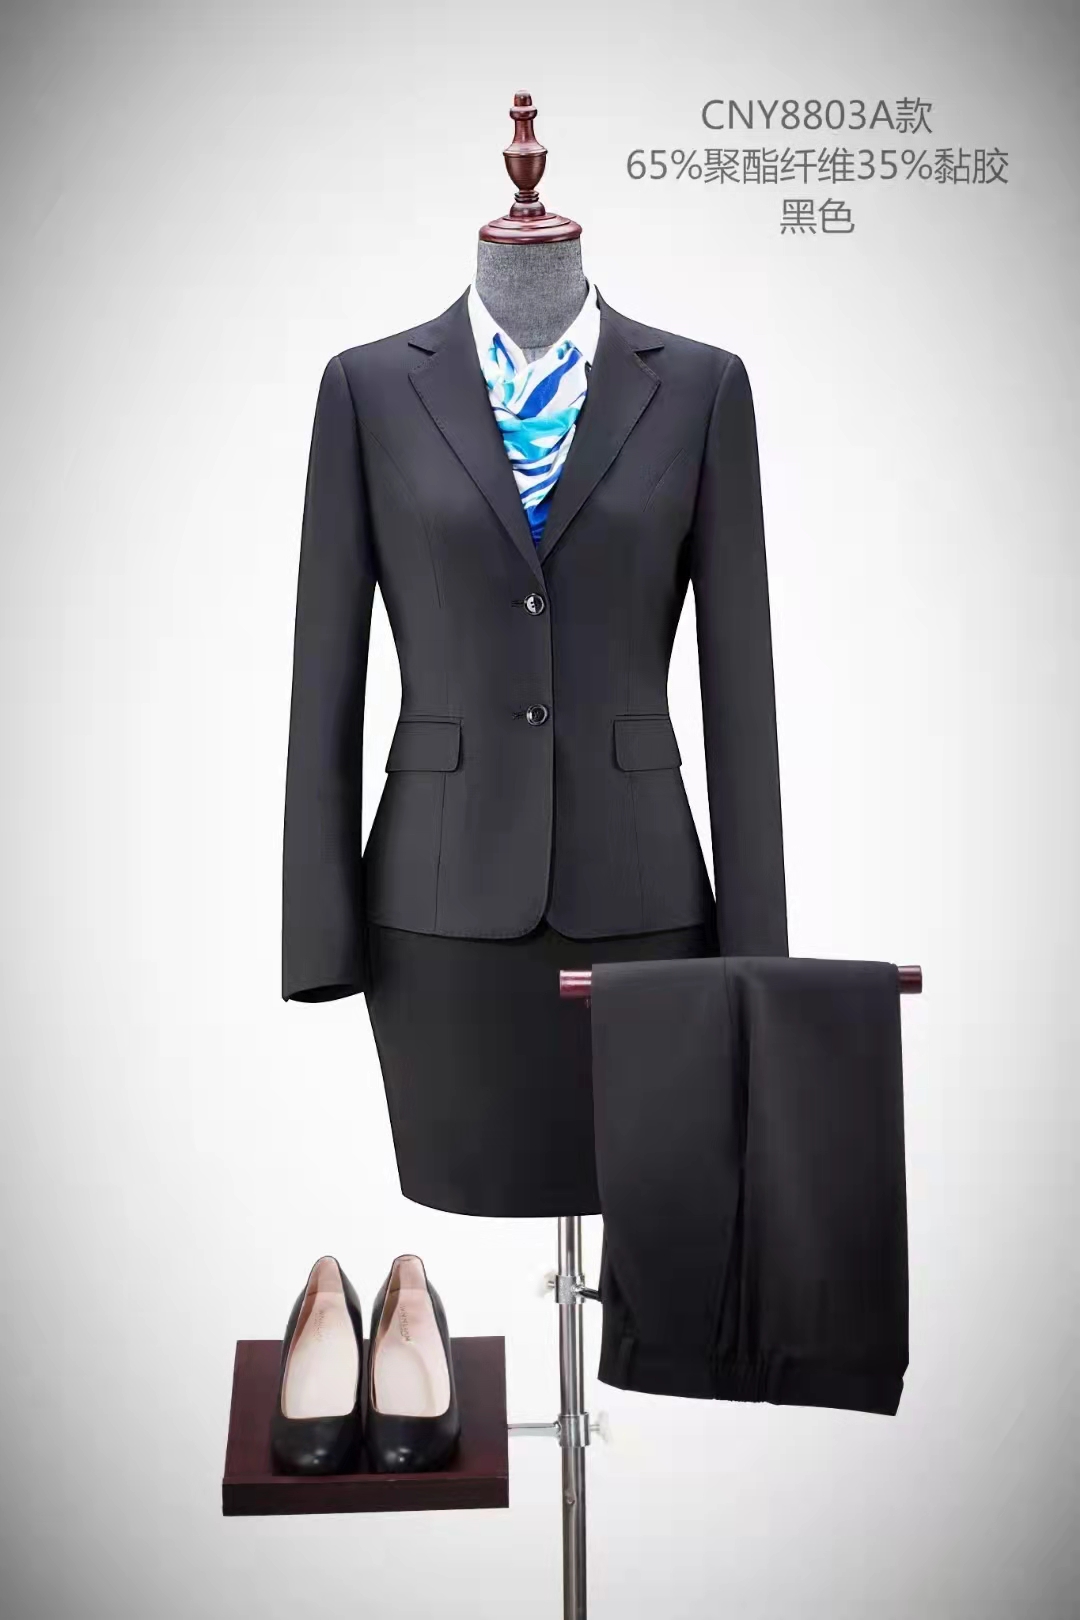 团体定制男女同款商务西装工作服物业4S工装企业办公室制服图片